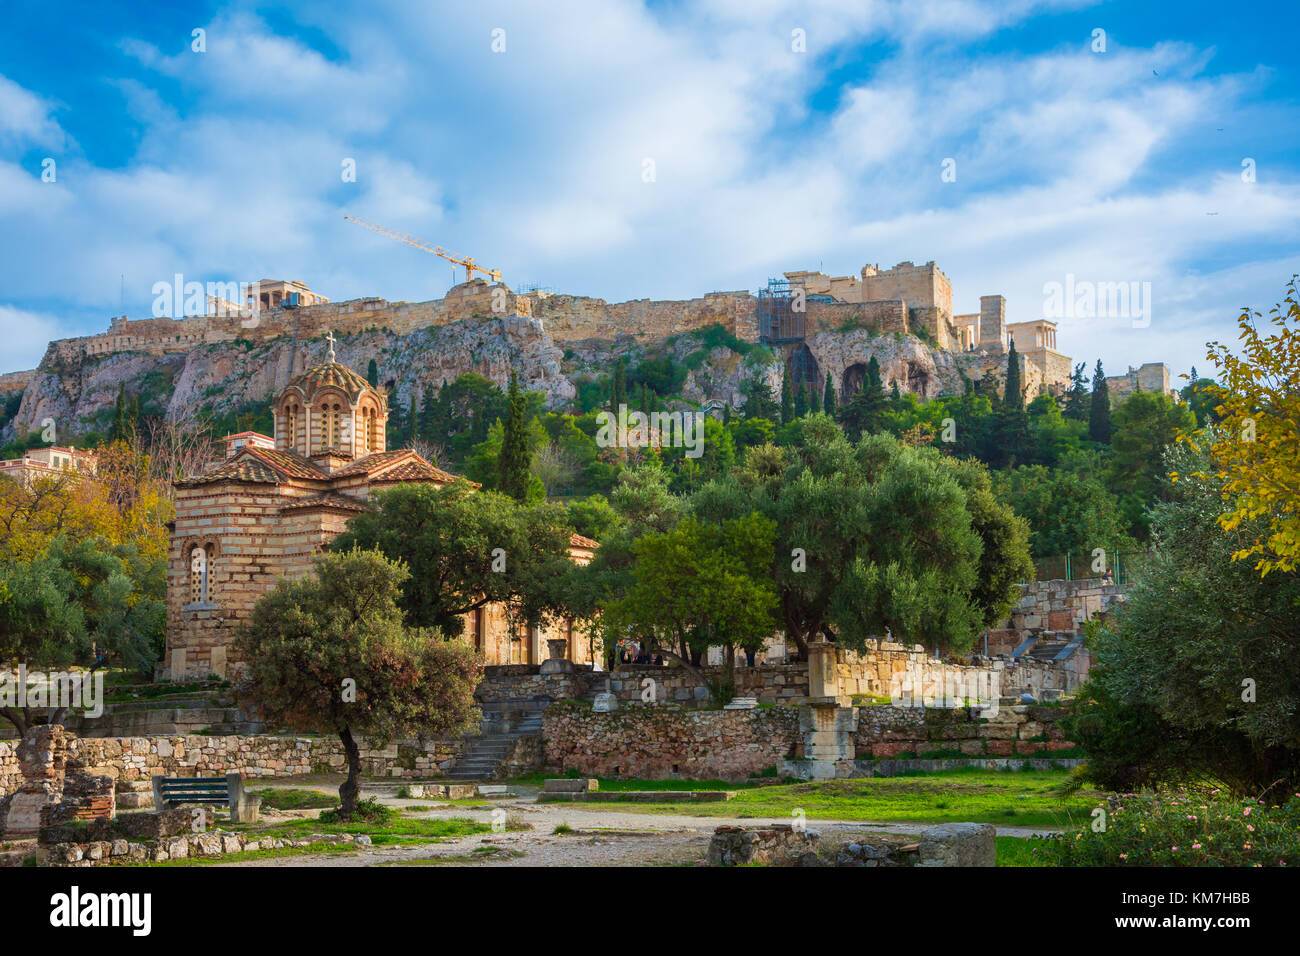 Acropolis con il Partenone. Vista dal mercato antico (agora) con le rovine dei famosi classici della civiltà greca, Atene, Grecia. Foto Stock